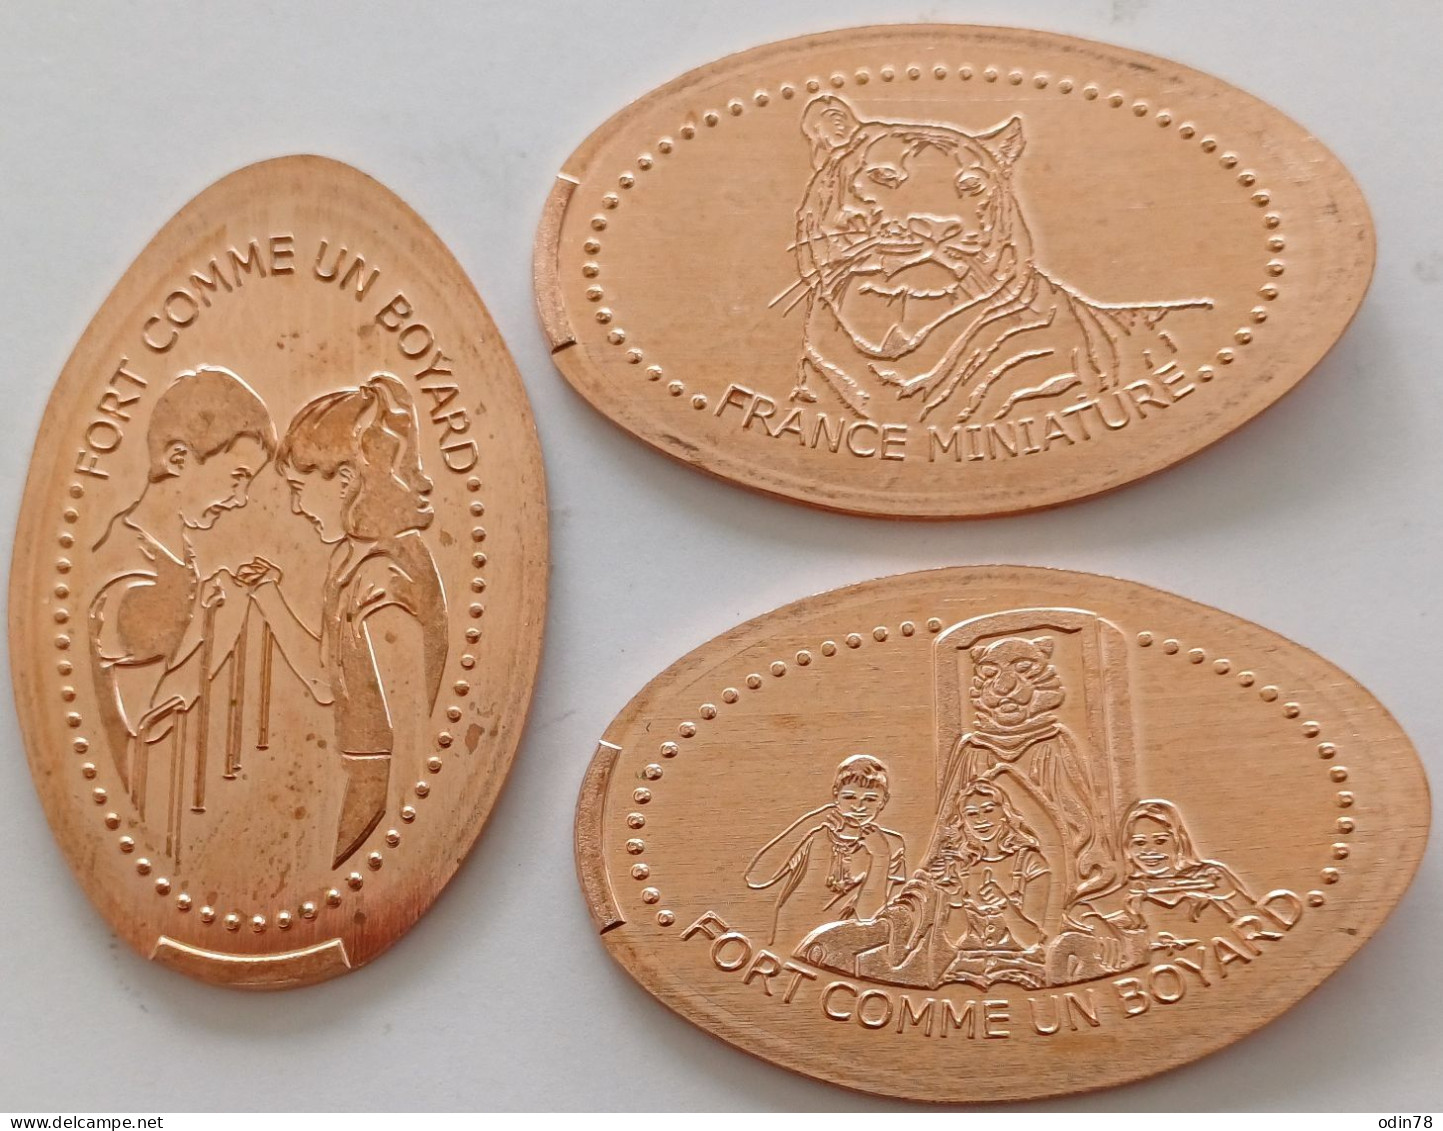 3 Pièces écrasées -   FRANCE MINIATURE  (78) - Souvenir-Medaille (elongated Coins)